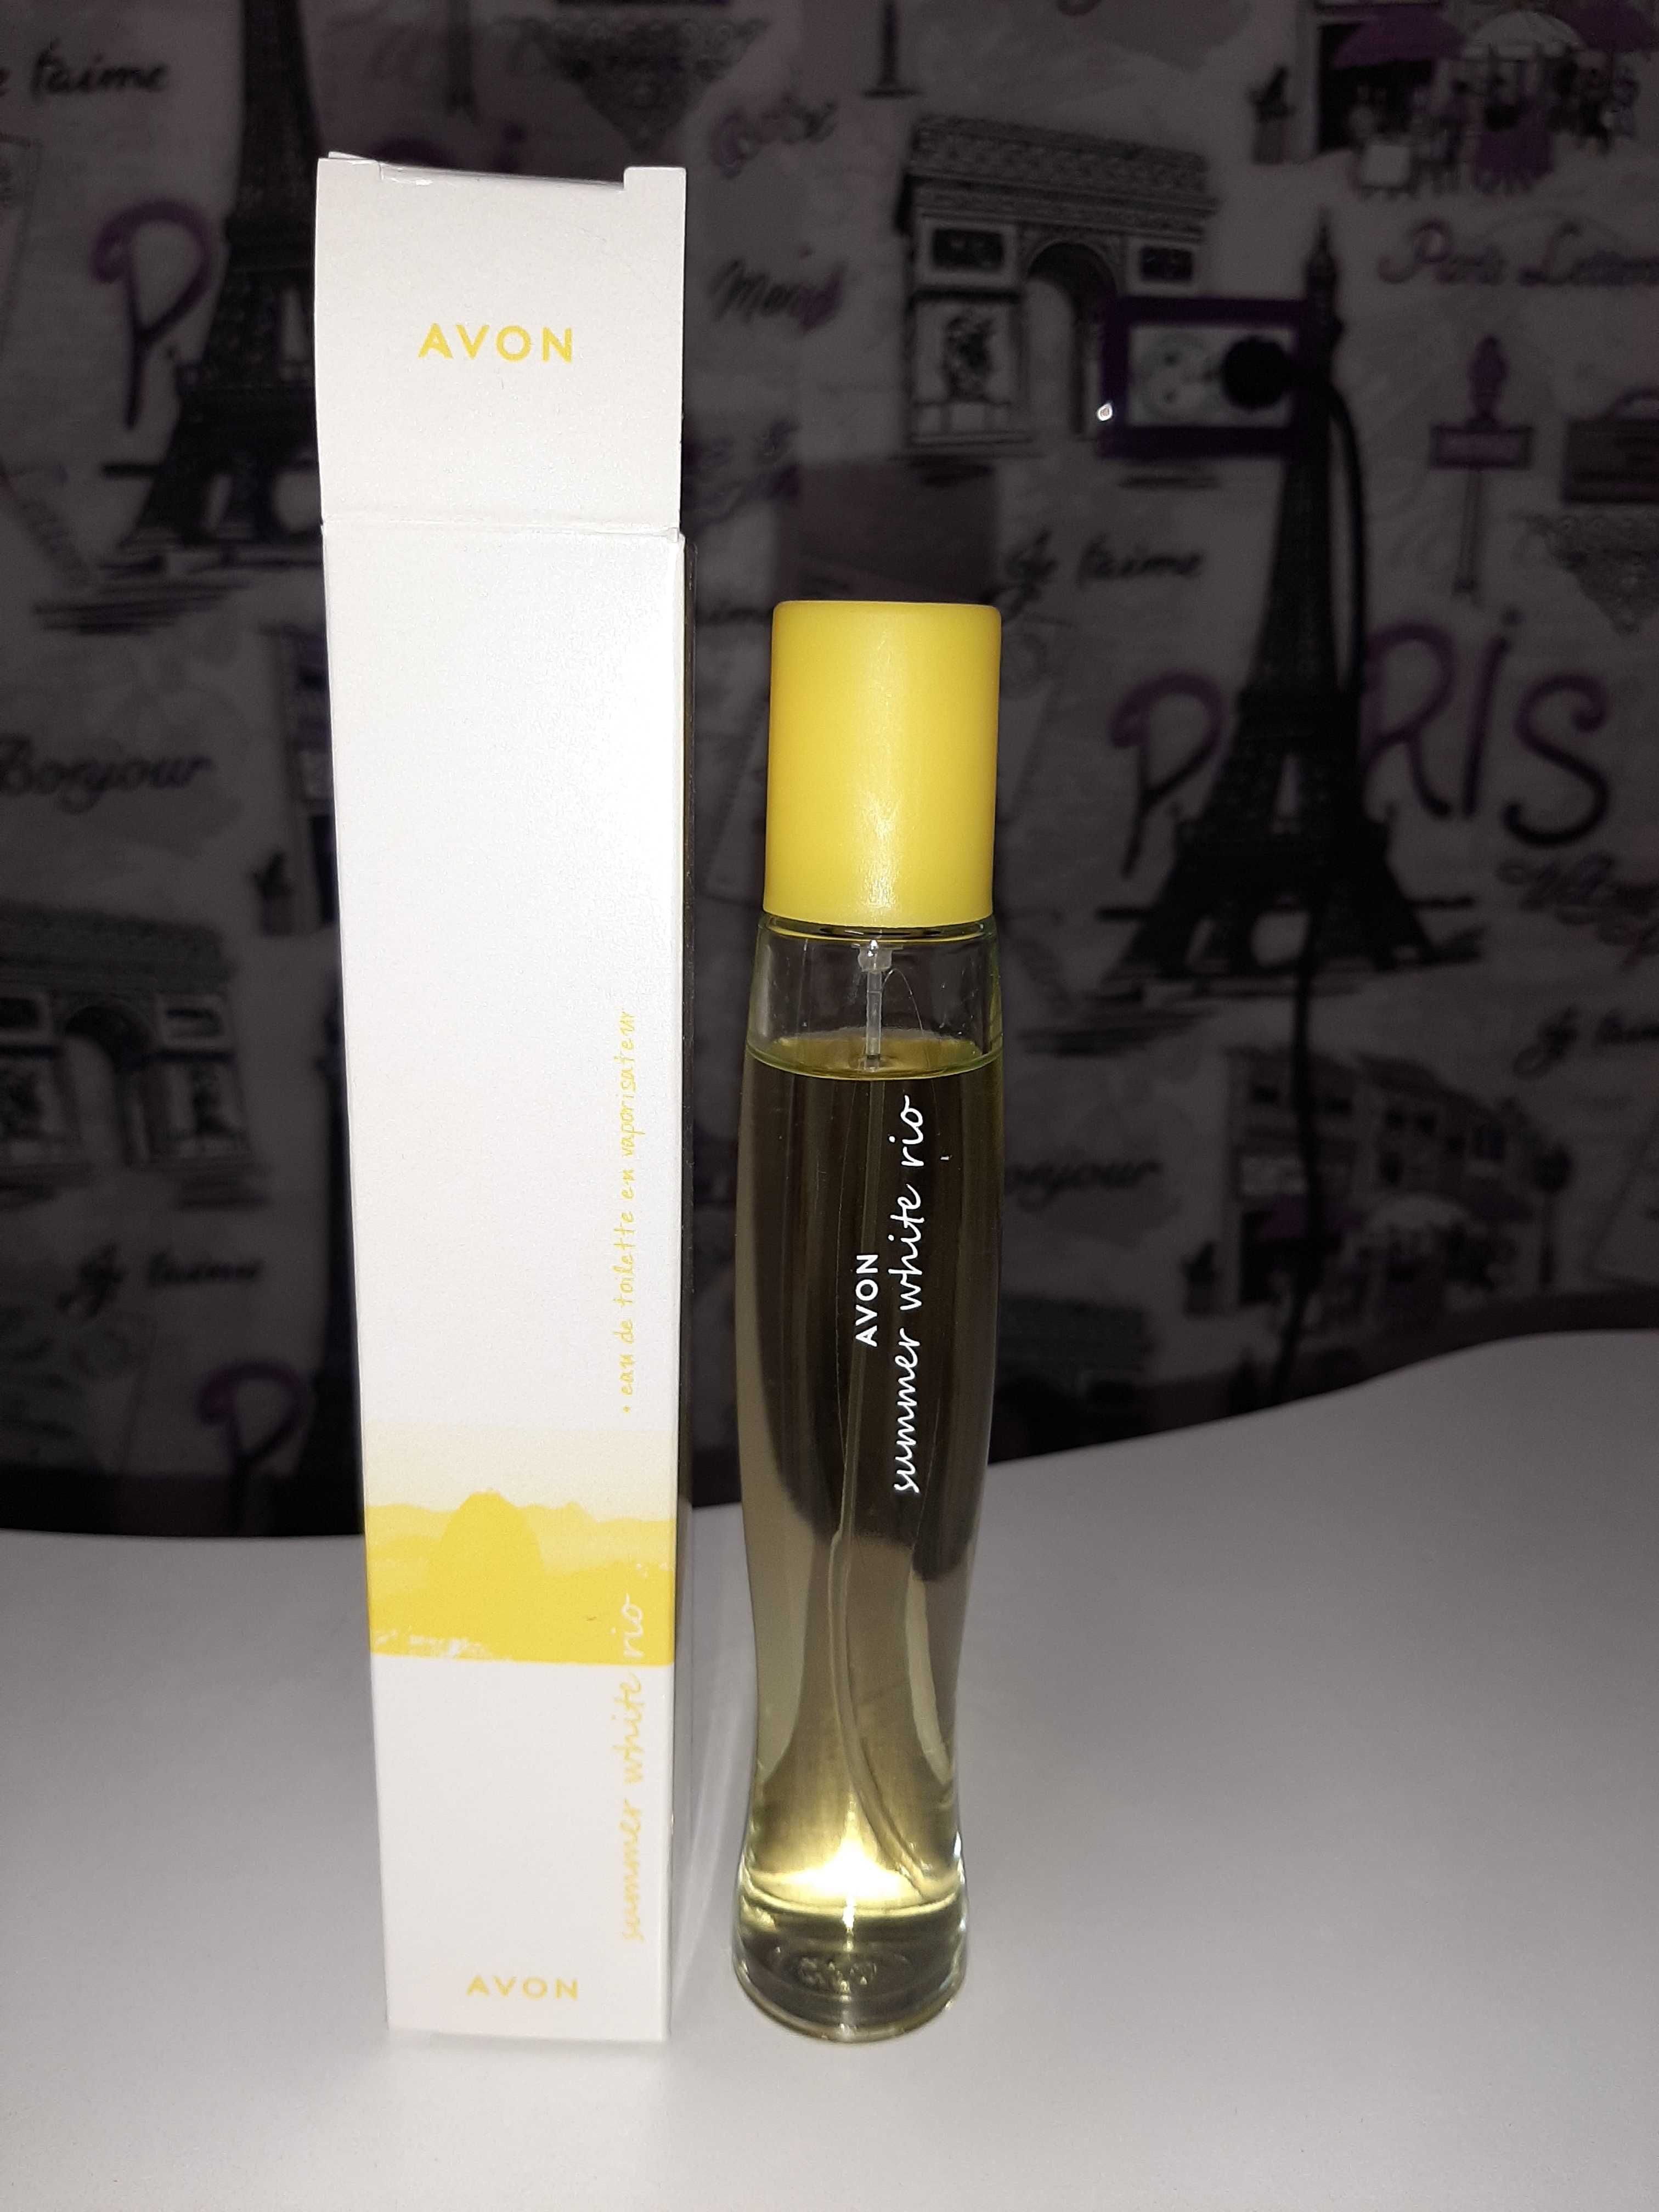 Козметика и парфюми от Avon